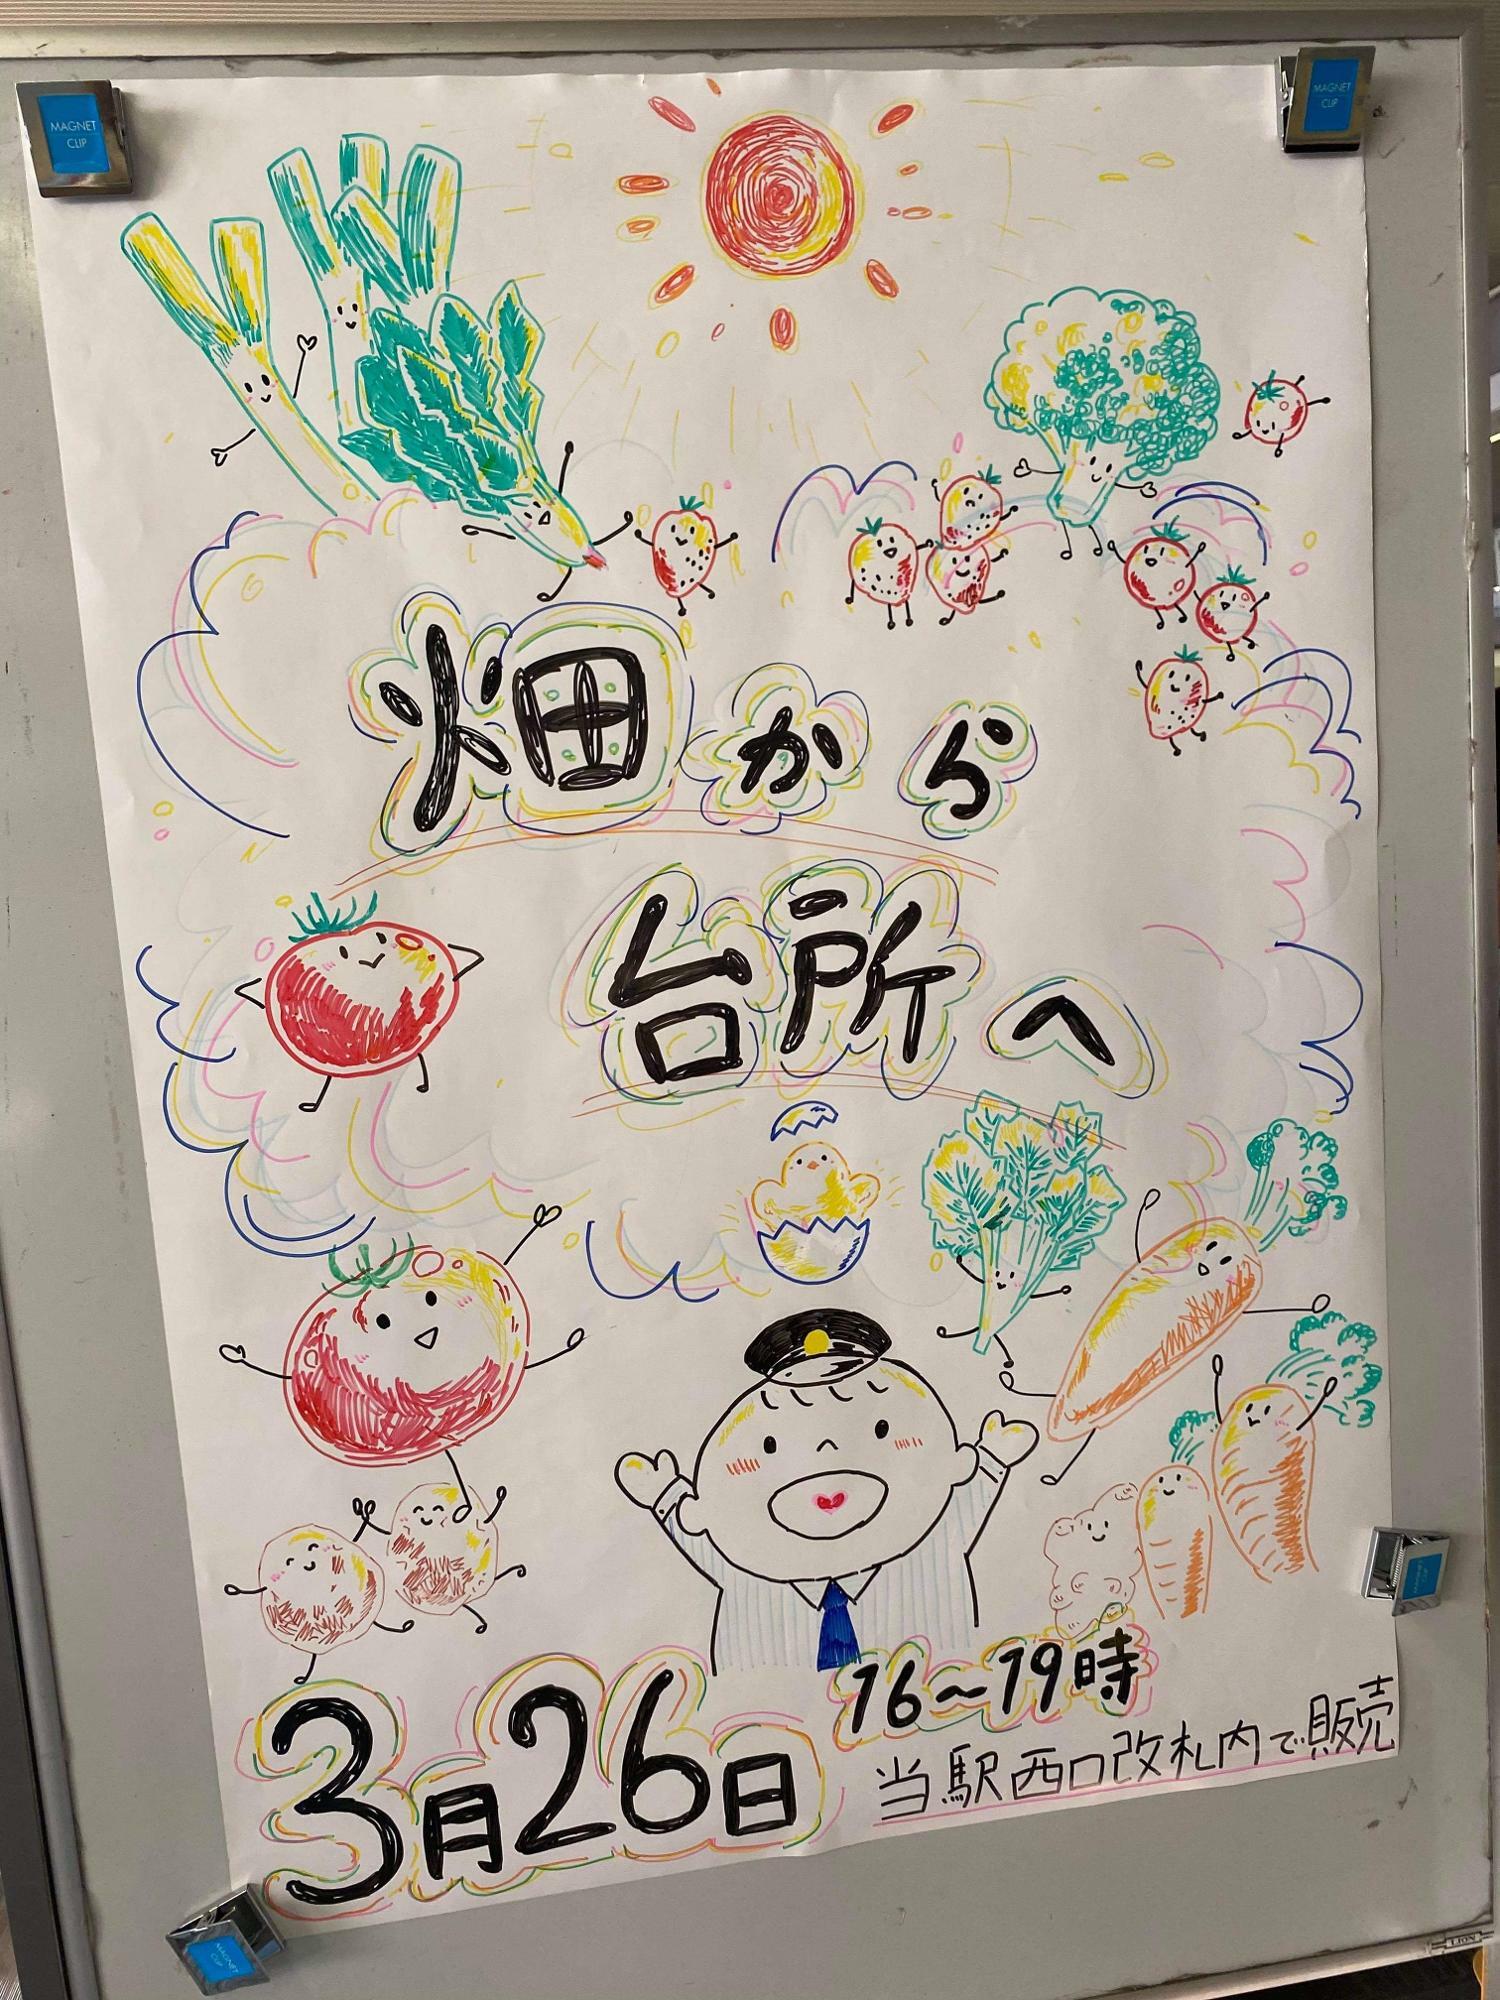 小田急電鉄さんが描いたであろう告知ポスター。トマト、菊芋、卵、いちごと、まさに「畑から〜」の皆さんが作っているものがふんだんに散りばめられています。